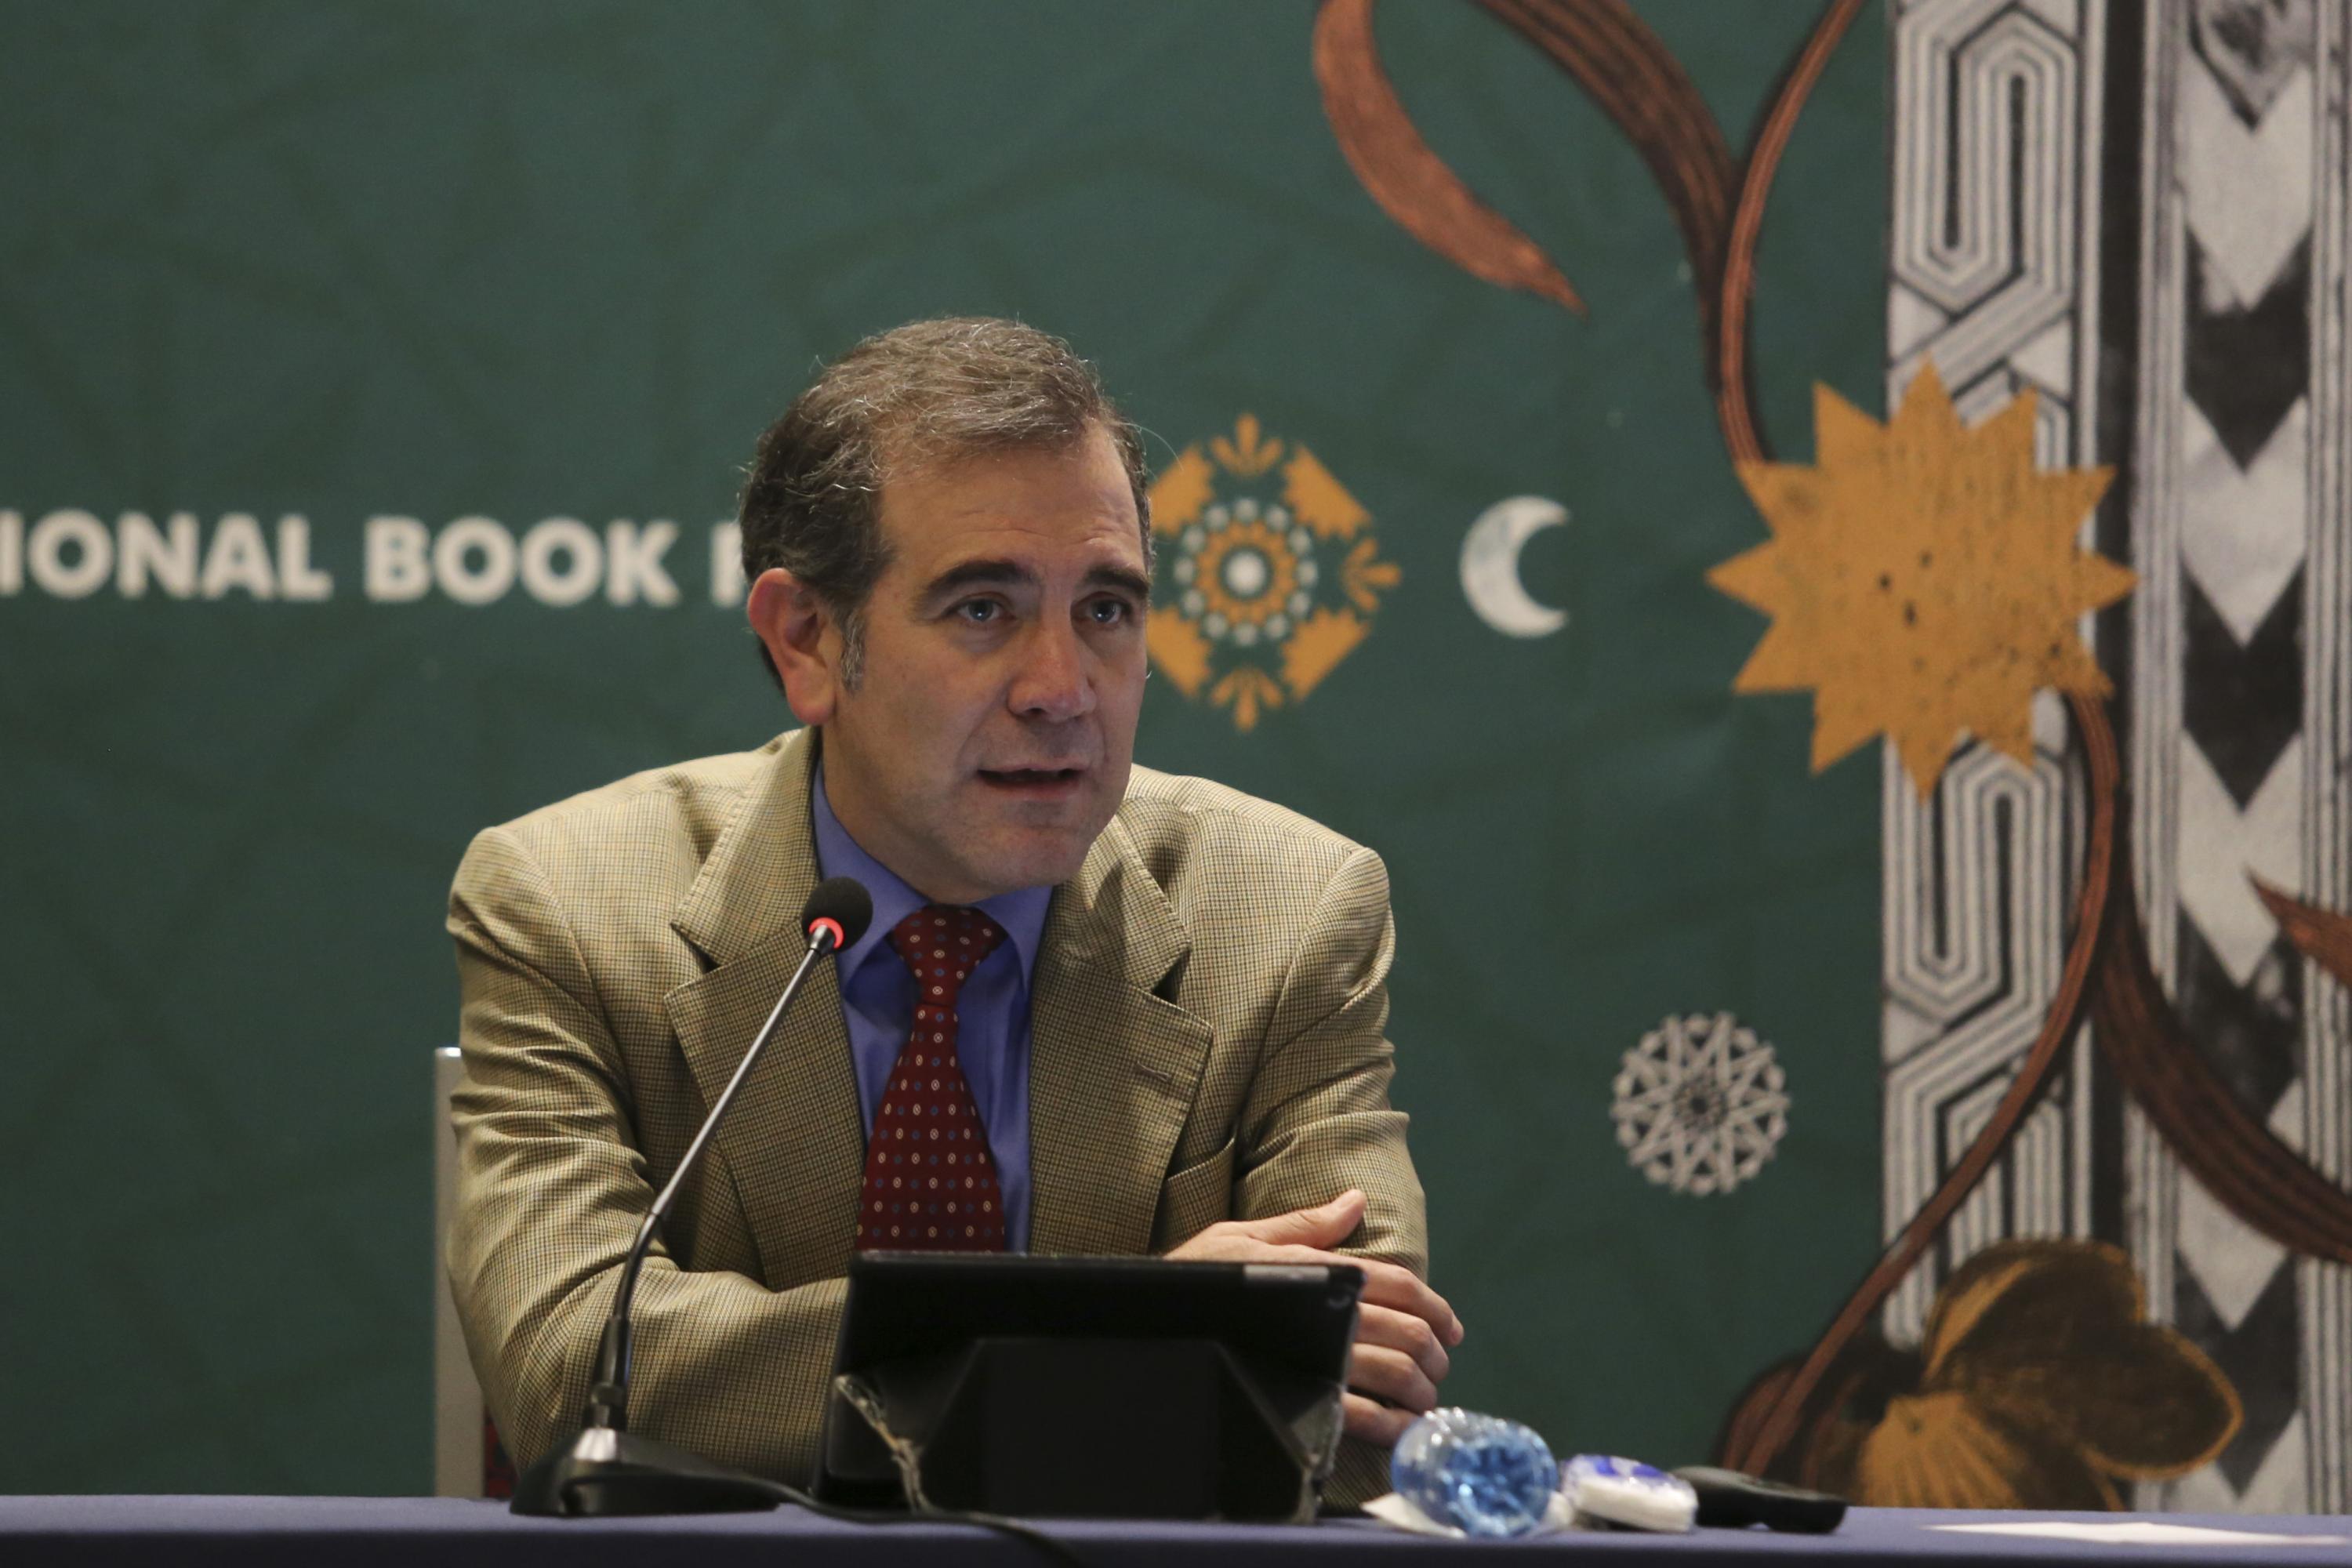 El Presidente del INE ofreció una conferencia en la Cátedra José Luis Lamadrid, en FIL Pensamiento